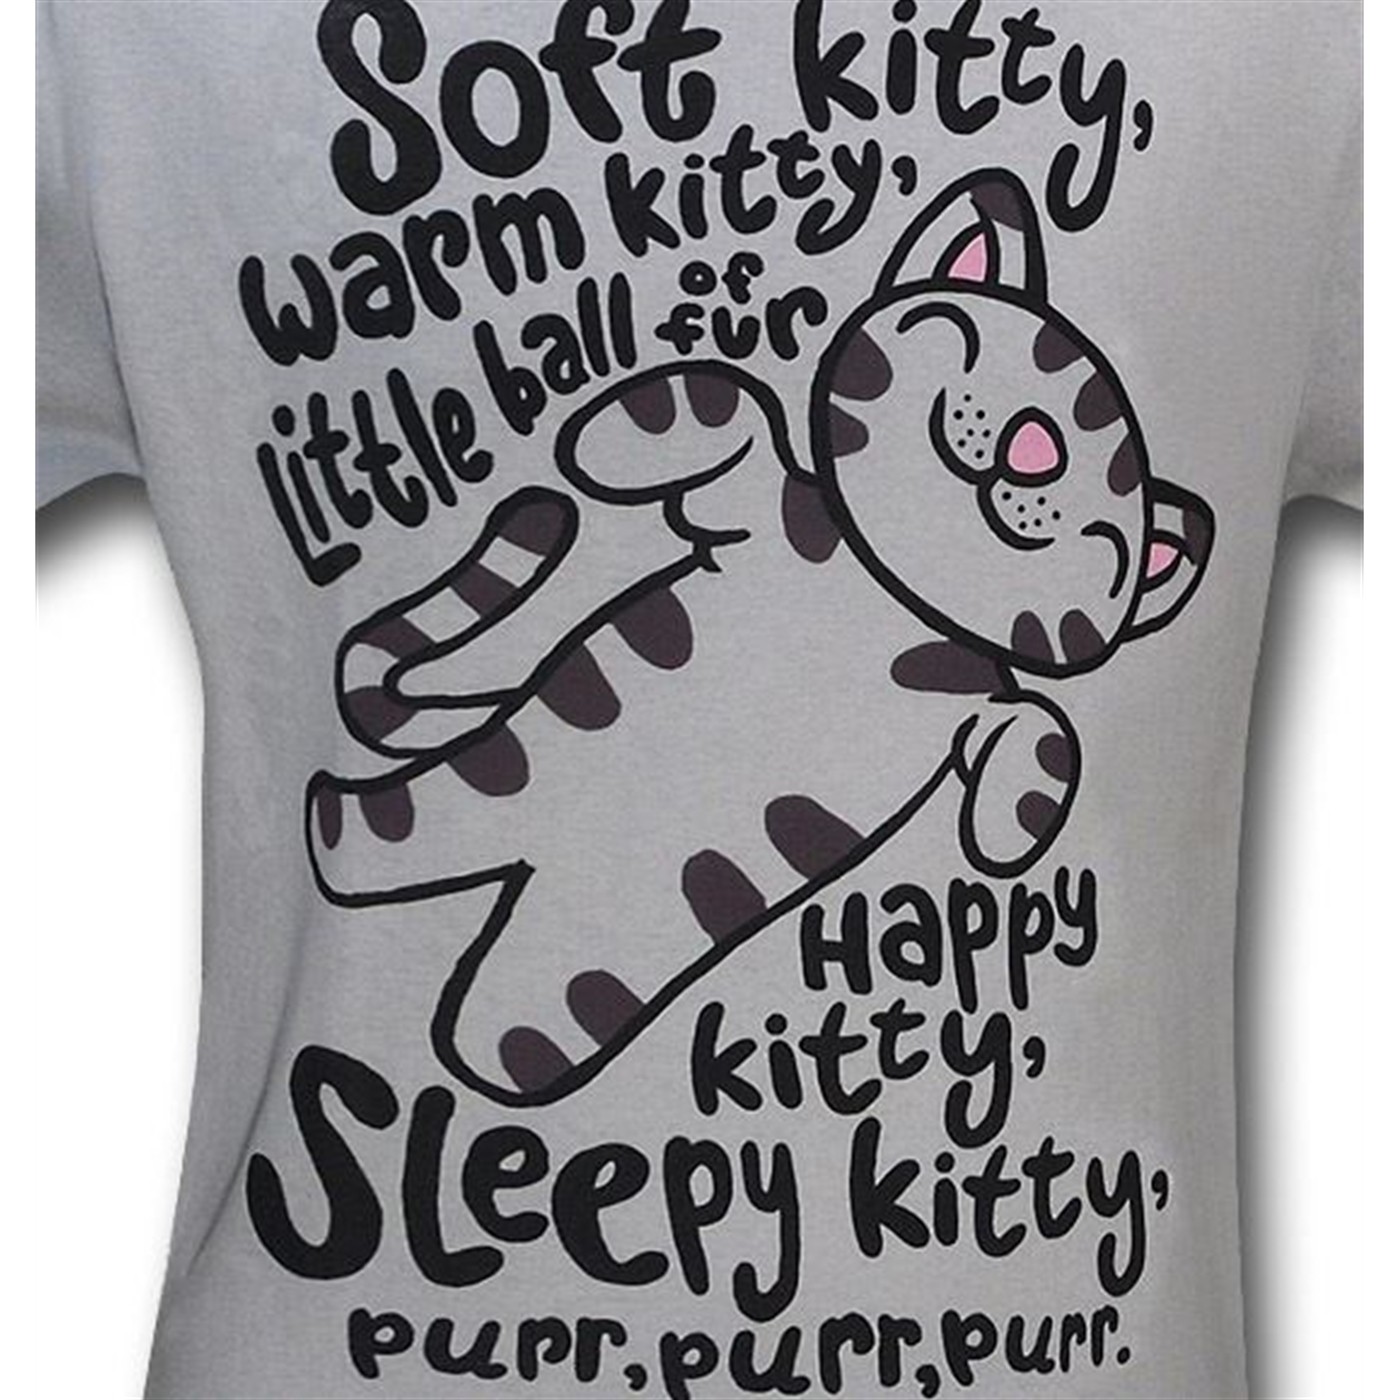 Big Bang Theory Soft Kitty Mens T-Shirt